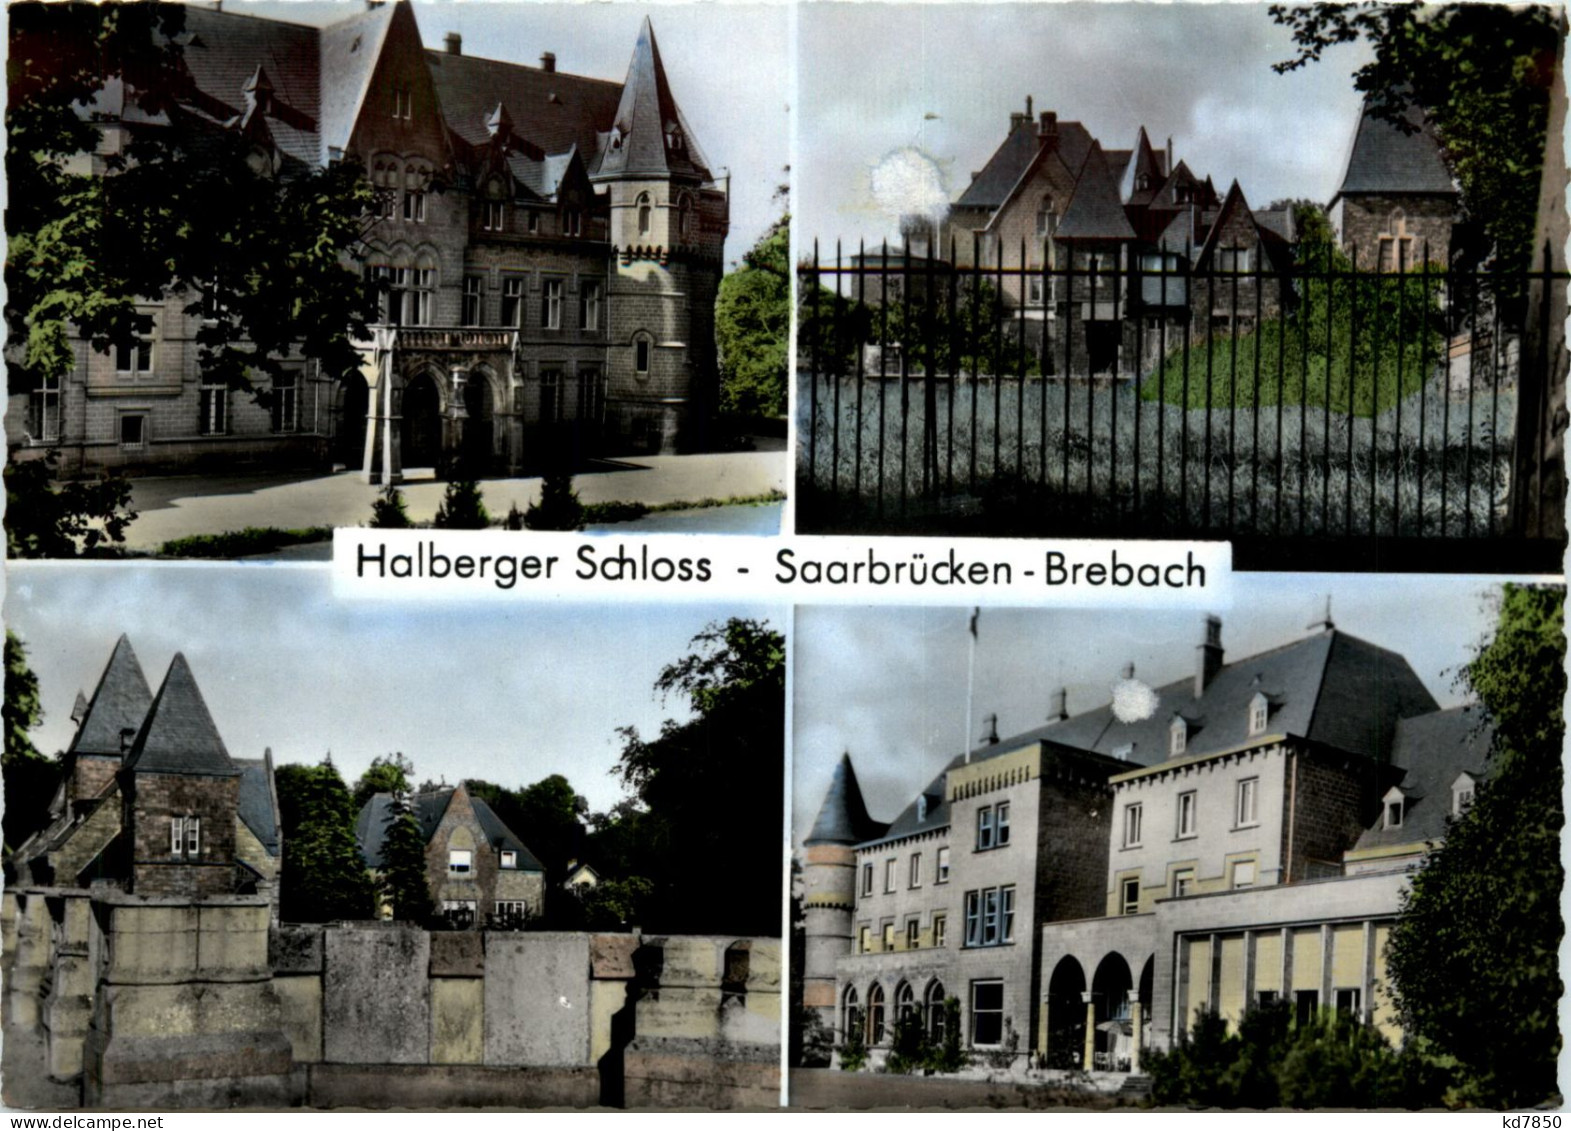 Saarbrücken-Brebach, Halberger Schloss - Saarbruecken